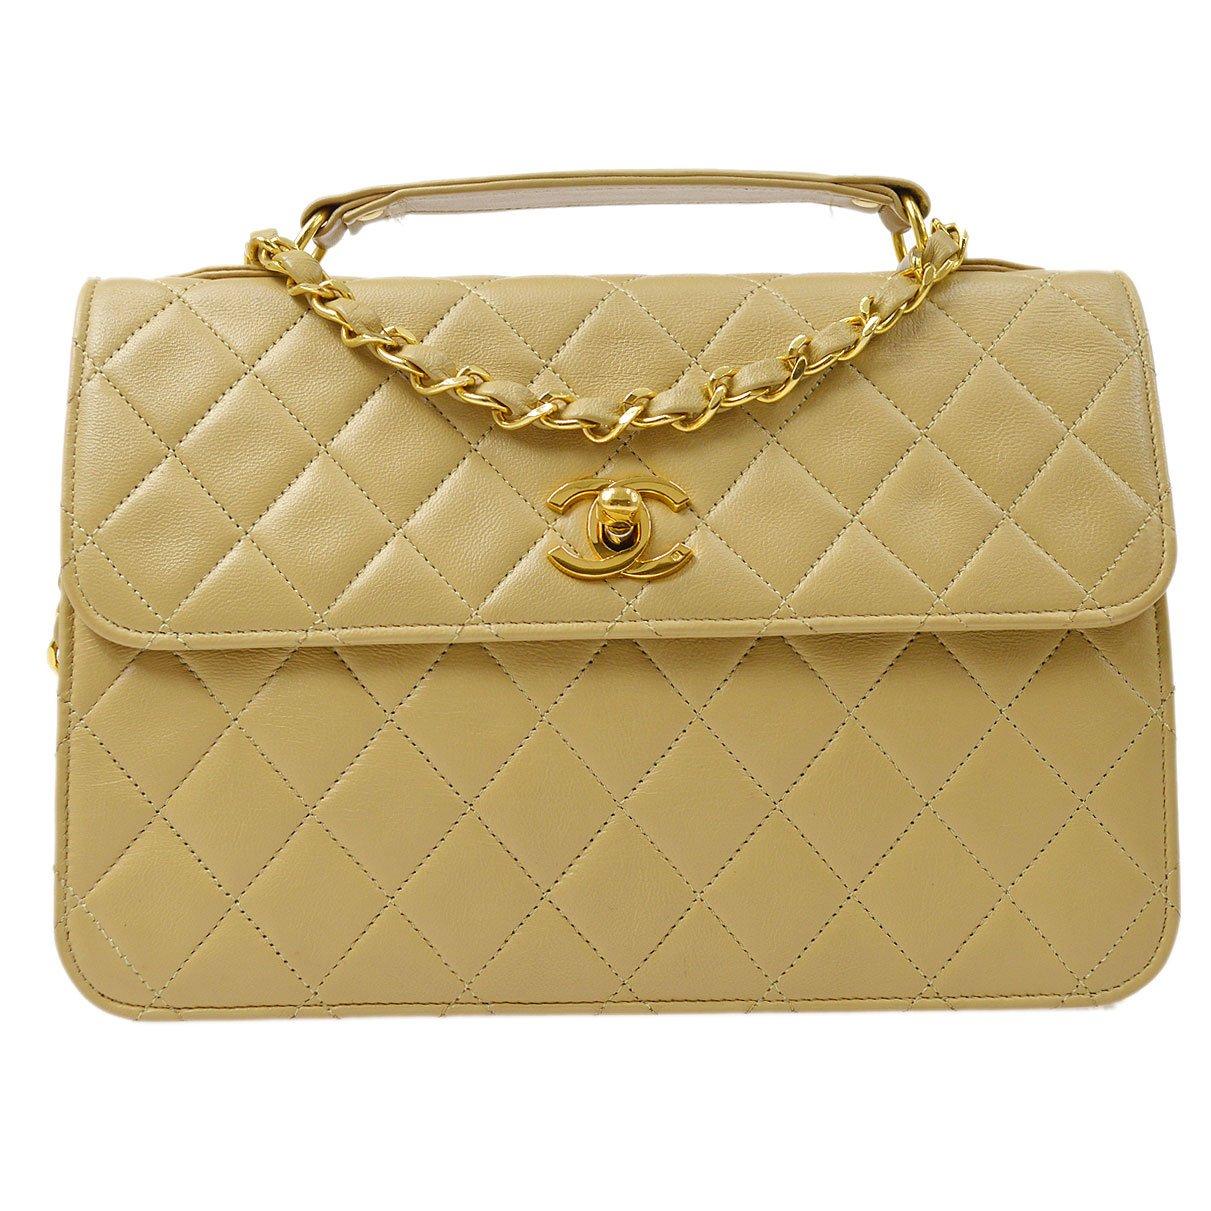 Chanel 1986-1988 Single Turnlock Handbag Beige Lambskin in